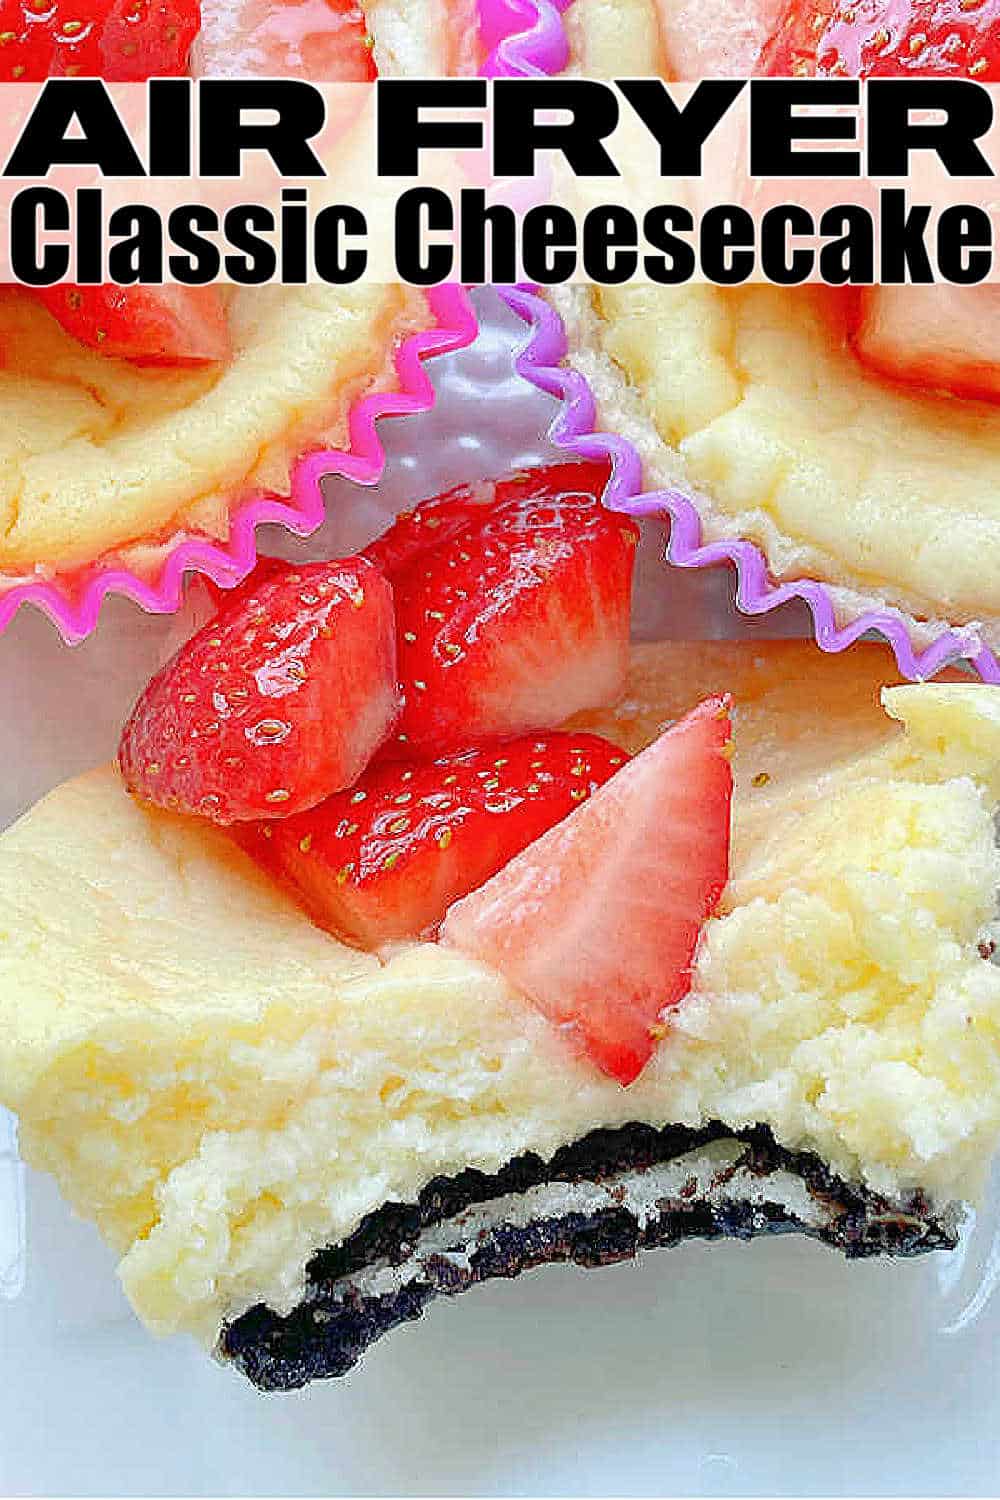 Air Fryer Cheesecake | Foodtastic Mom #airfryerrecipes #cheesecakerecipes #minicheesecakes #airfryercheesecake via @foodtasticmom